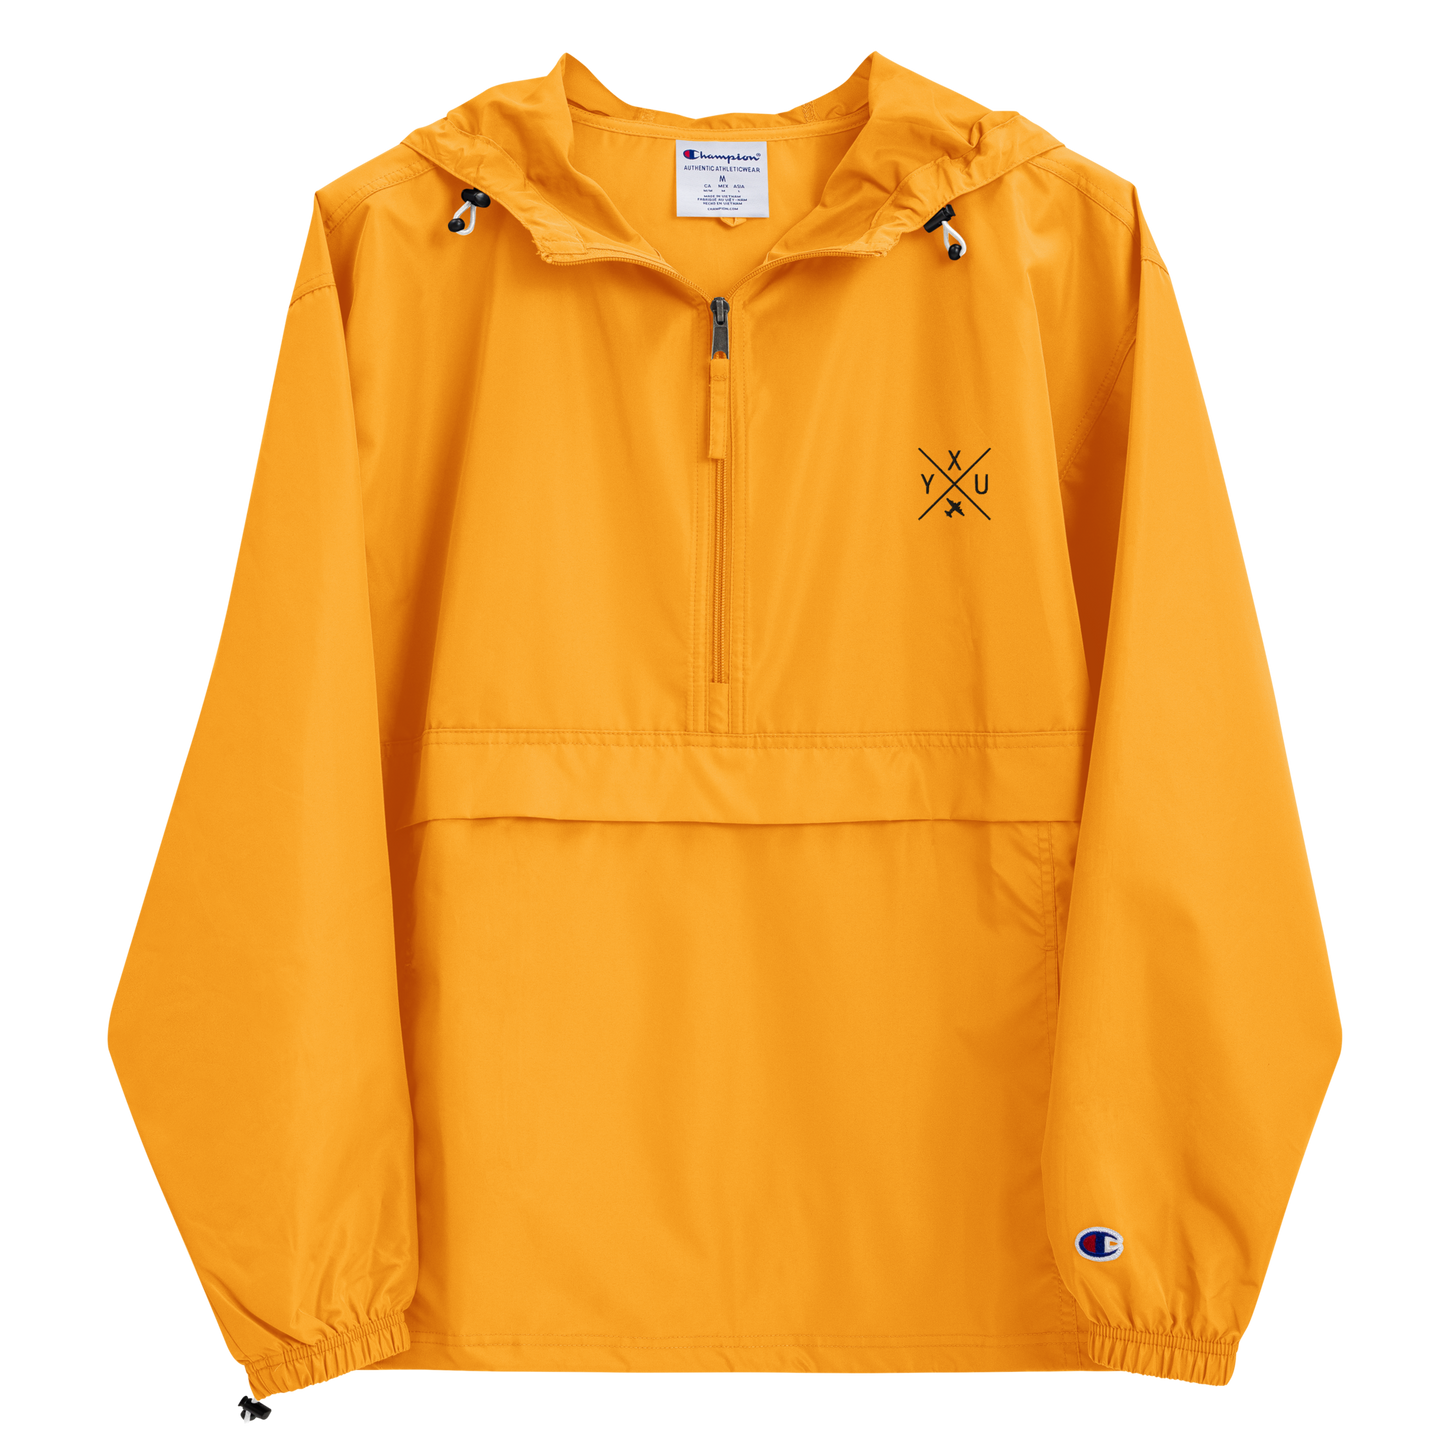 Crossed-X Packable Jacket • YXU London • YHM Designs - Image 07